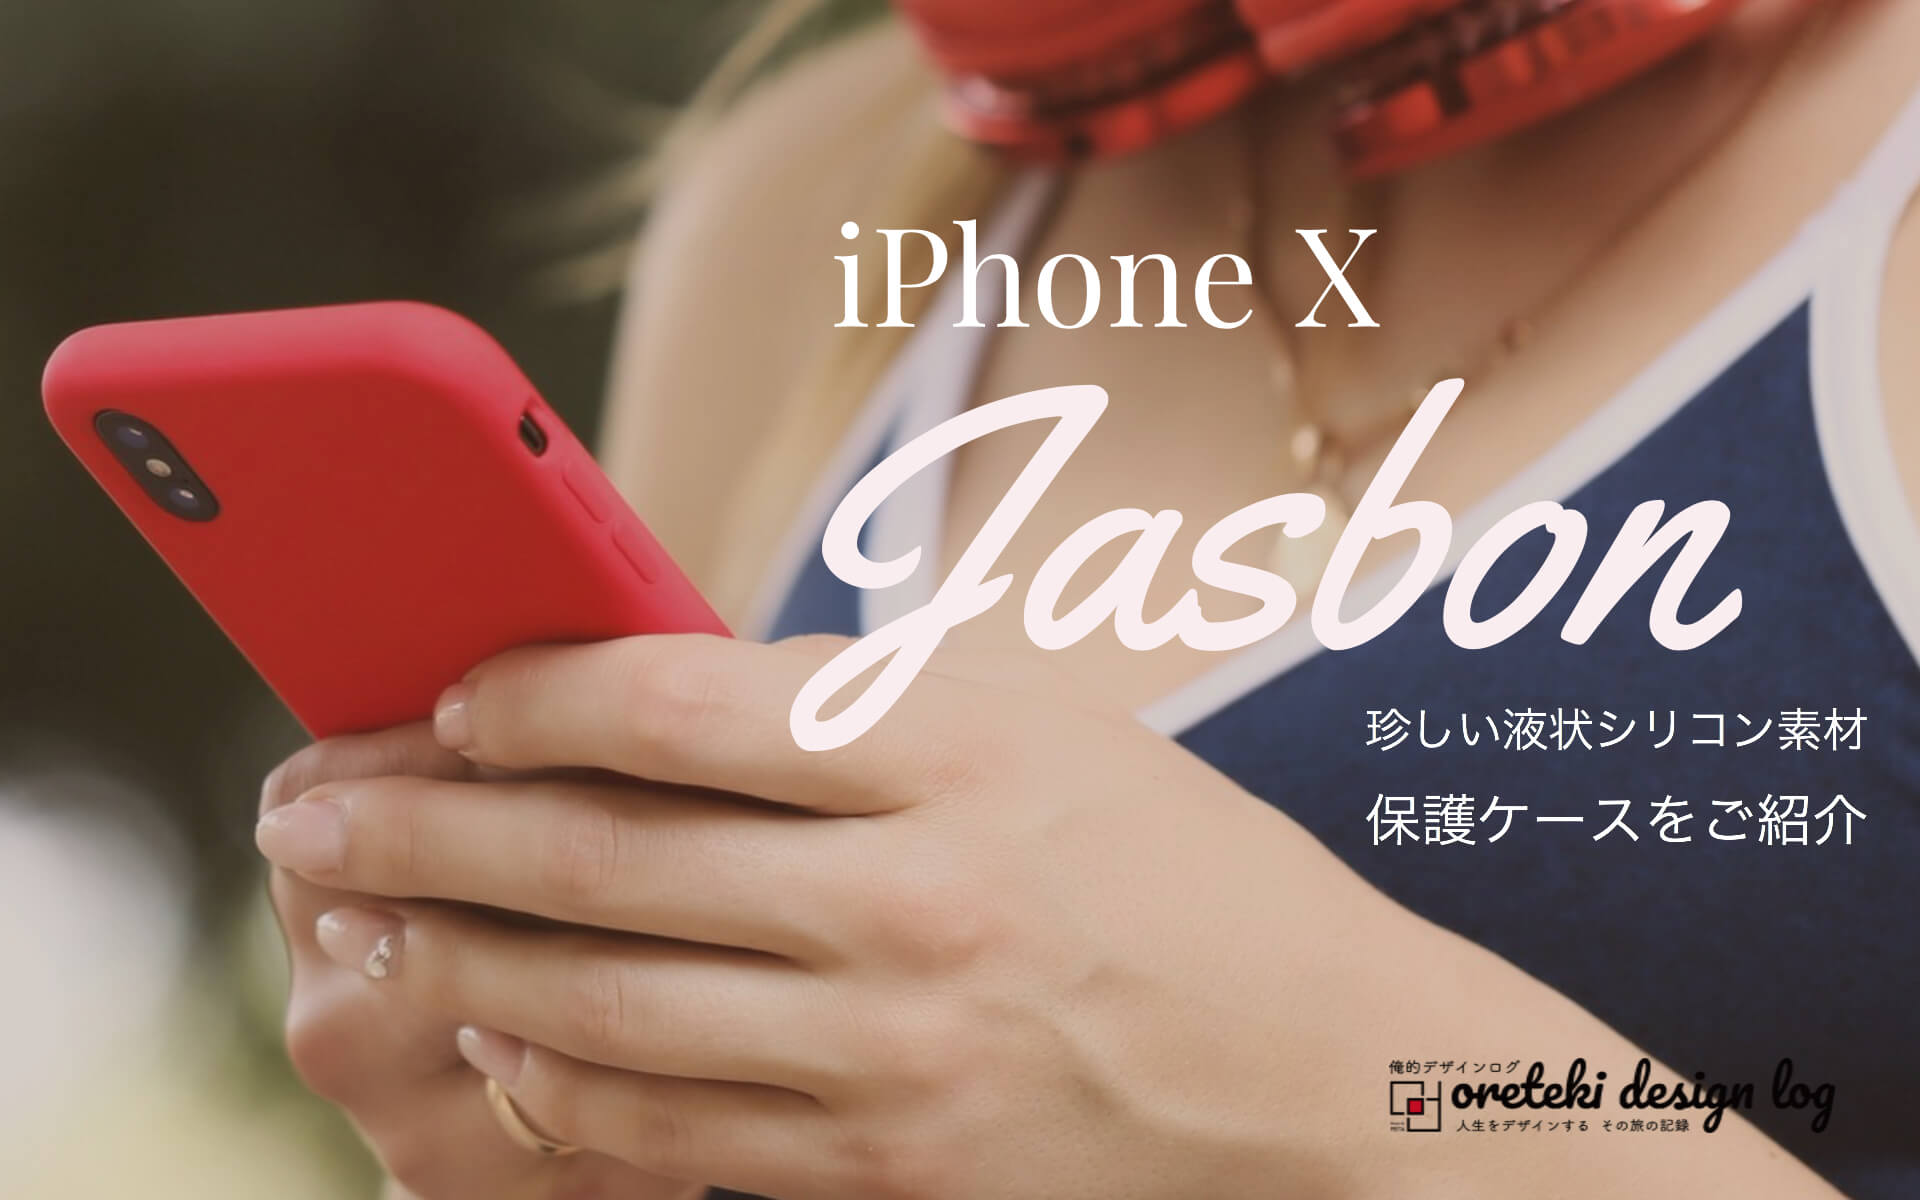 iPhone X Jasbon ケースの記事のアイキャッチ画像